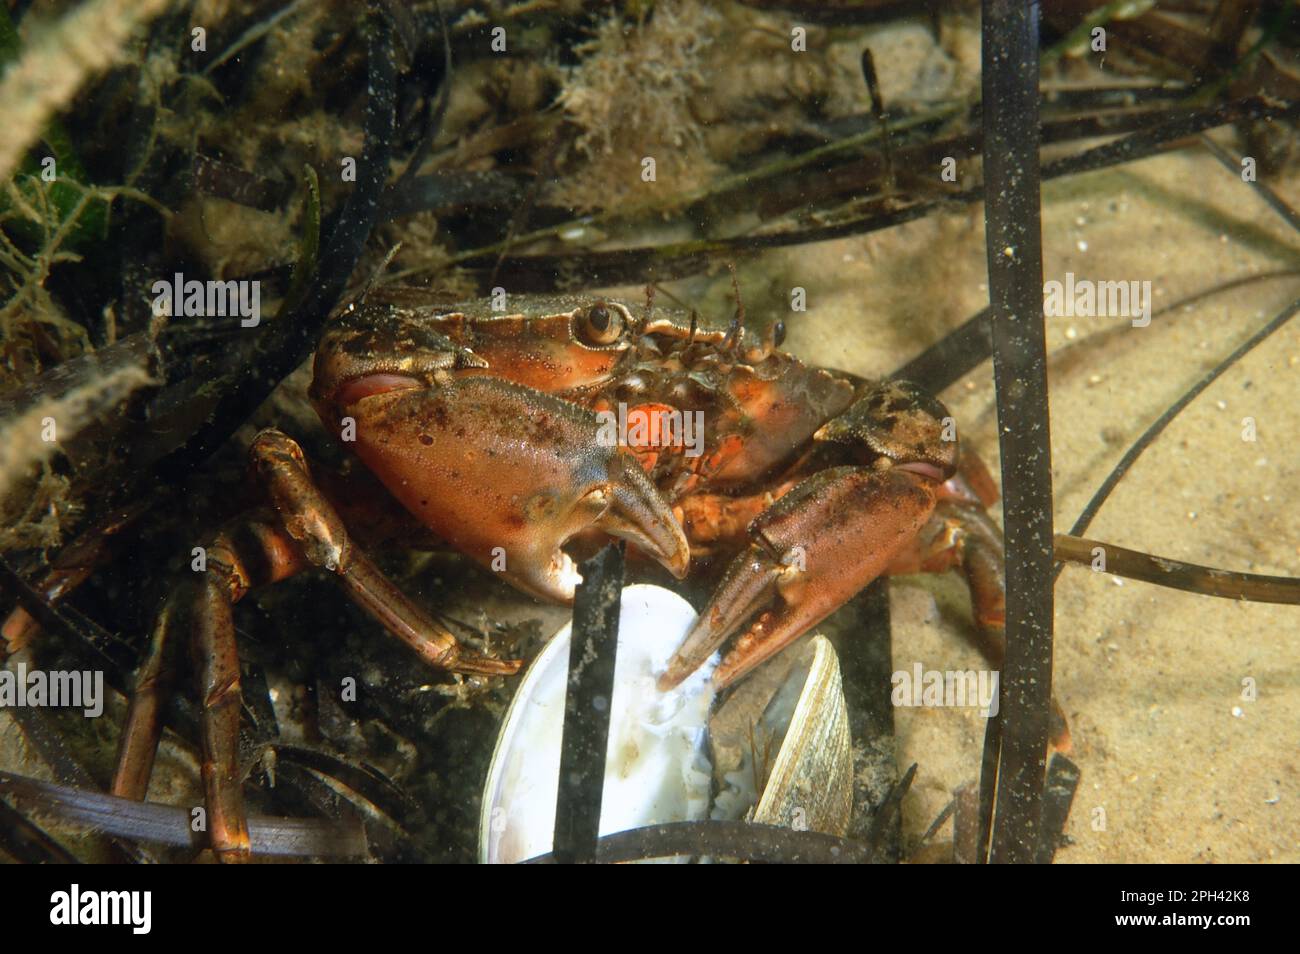 North Atlantic european green crabs (Carcinus maenas), North Atlantic Beach Crab, Other Animals, Crabs, Crustaceans, Animals, Shore Crab adult Stock Photo